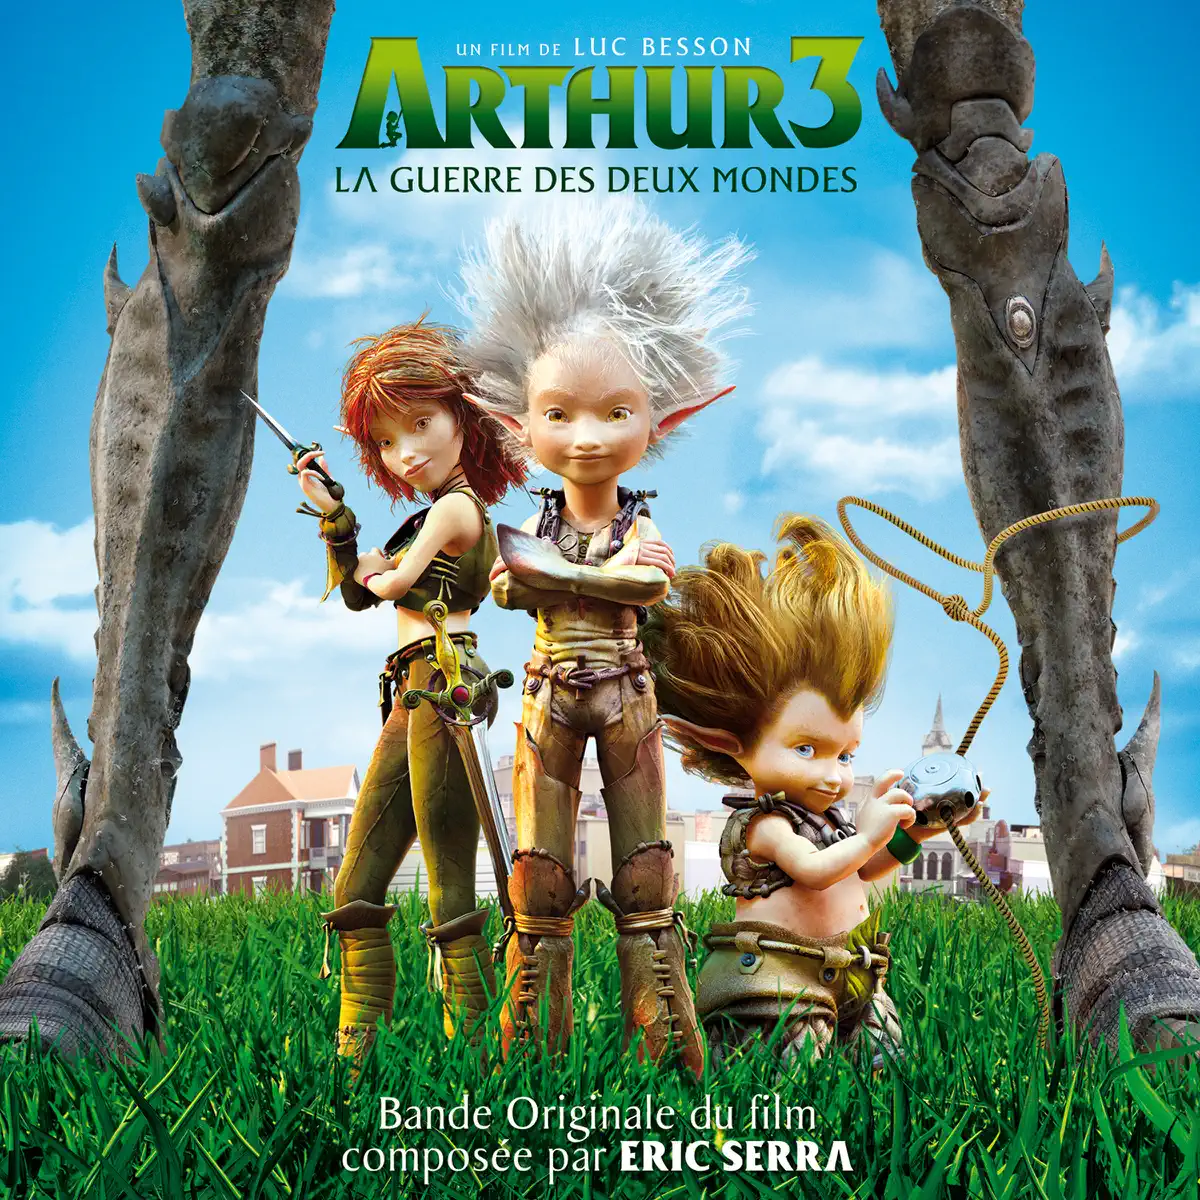 Eric Serra - 亚瑟和他的迷你王国 Arthur 3: La guerre des deux mondes (Bande originale du film) (2010) [iTunes Plus AAC M4A]-新房子